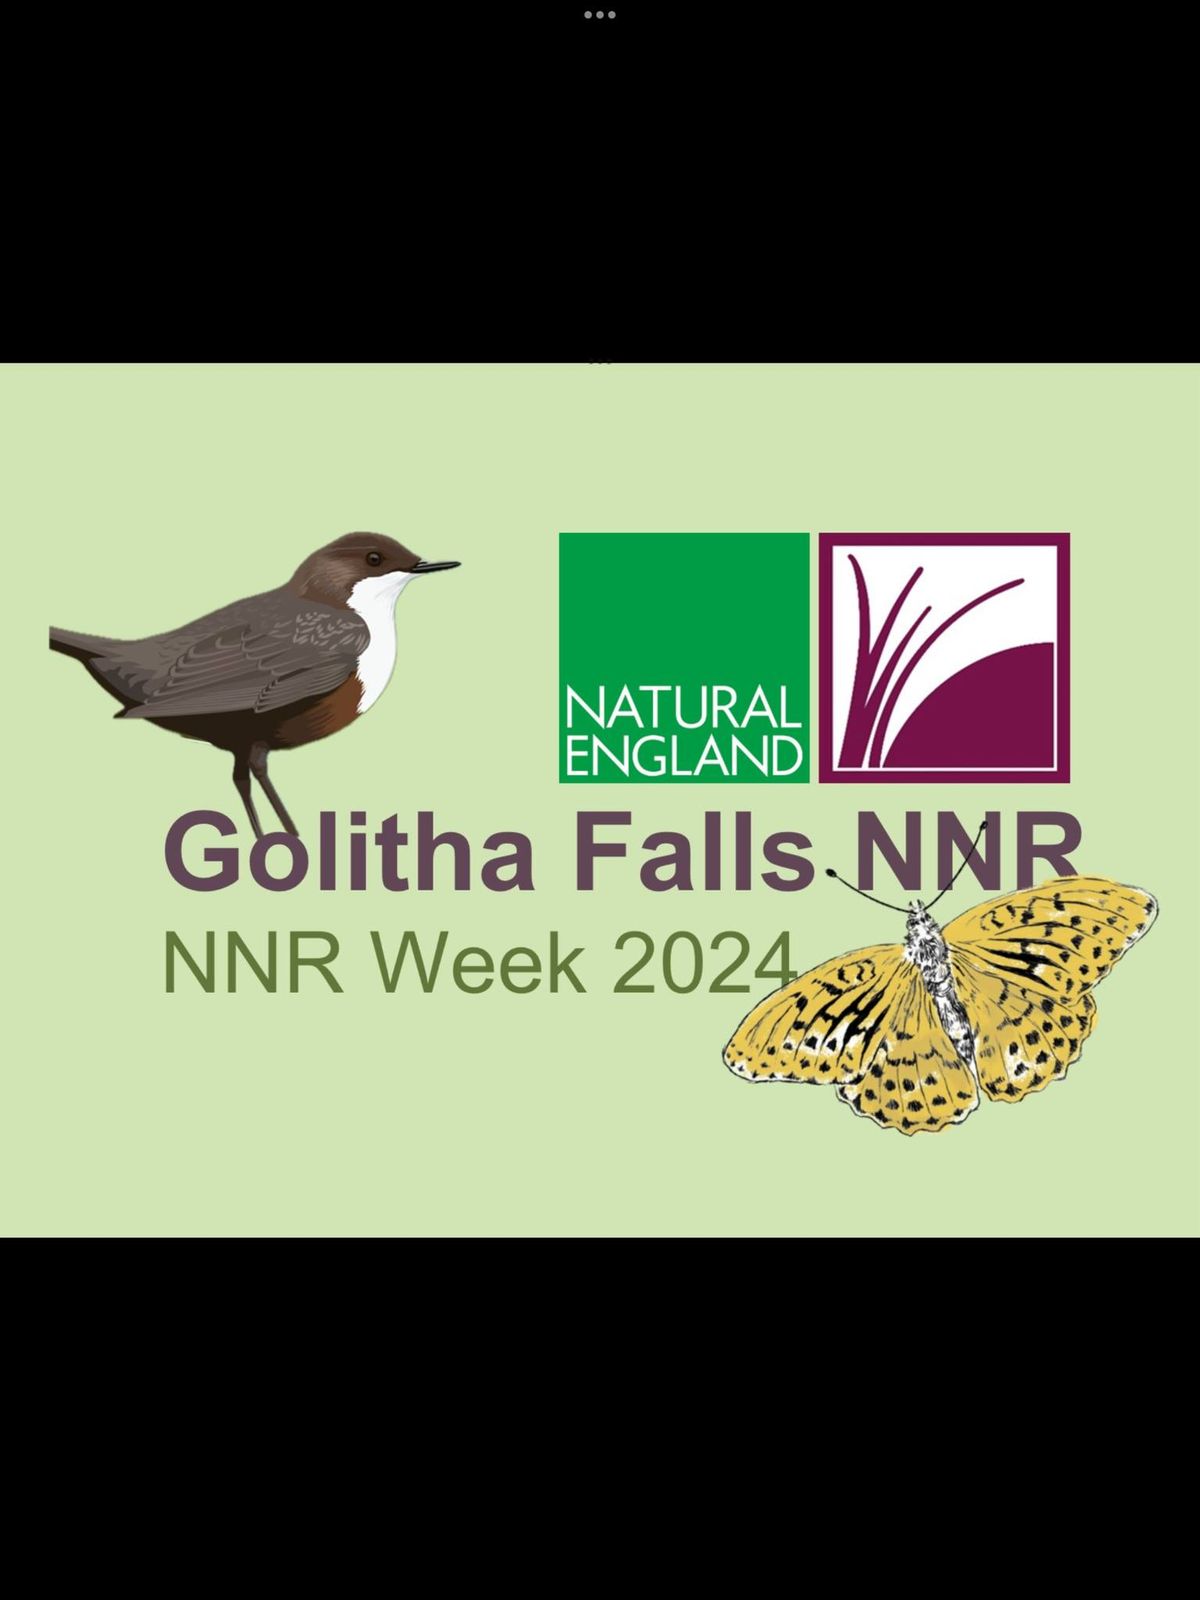 NNR Week 2024 - Golitha Falls Bat Walk